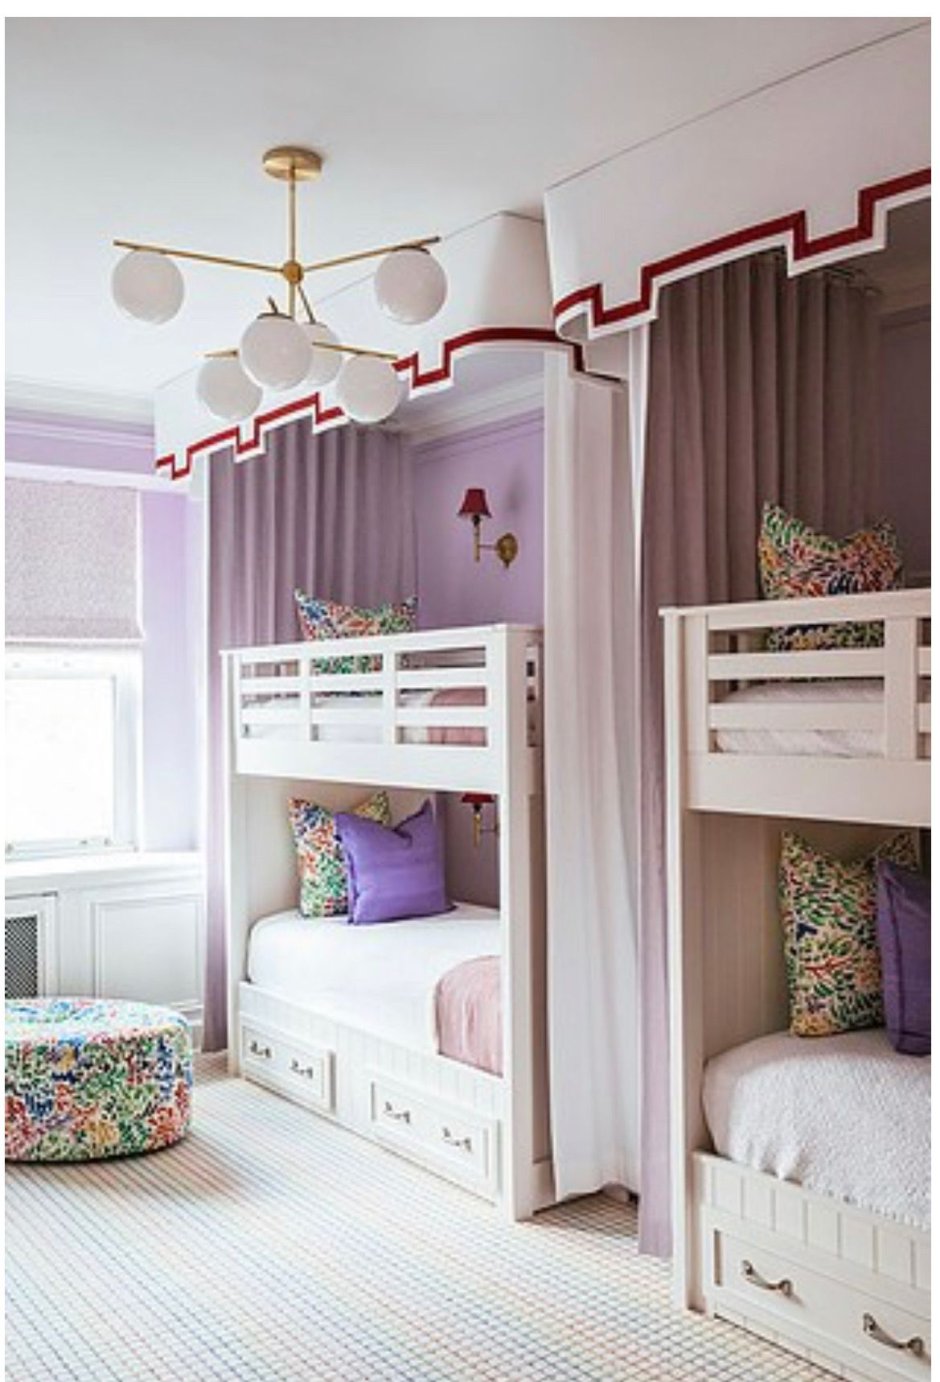 Комната для девочек с двухъярусной кроватью